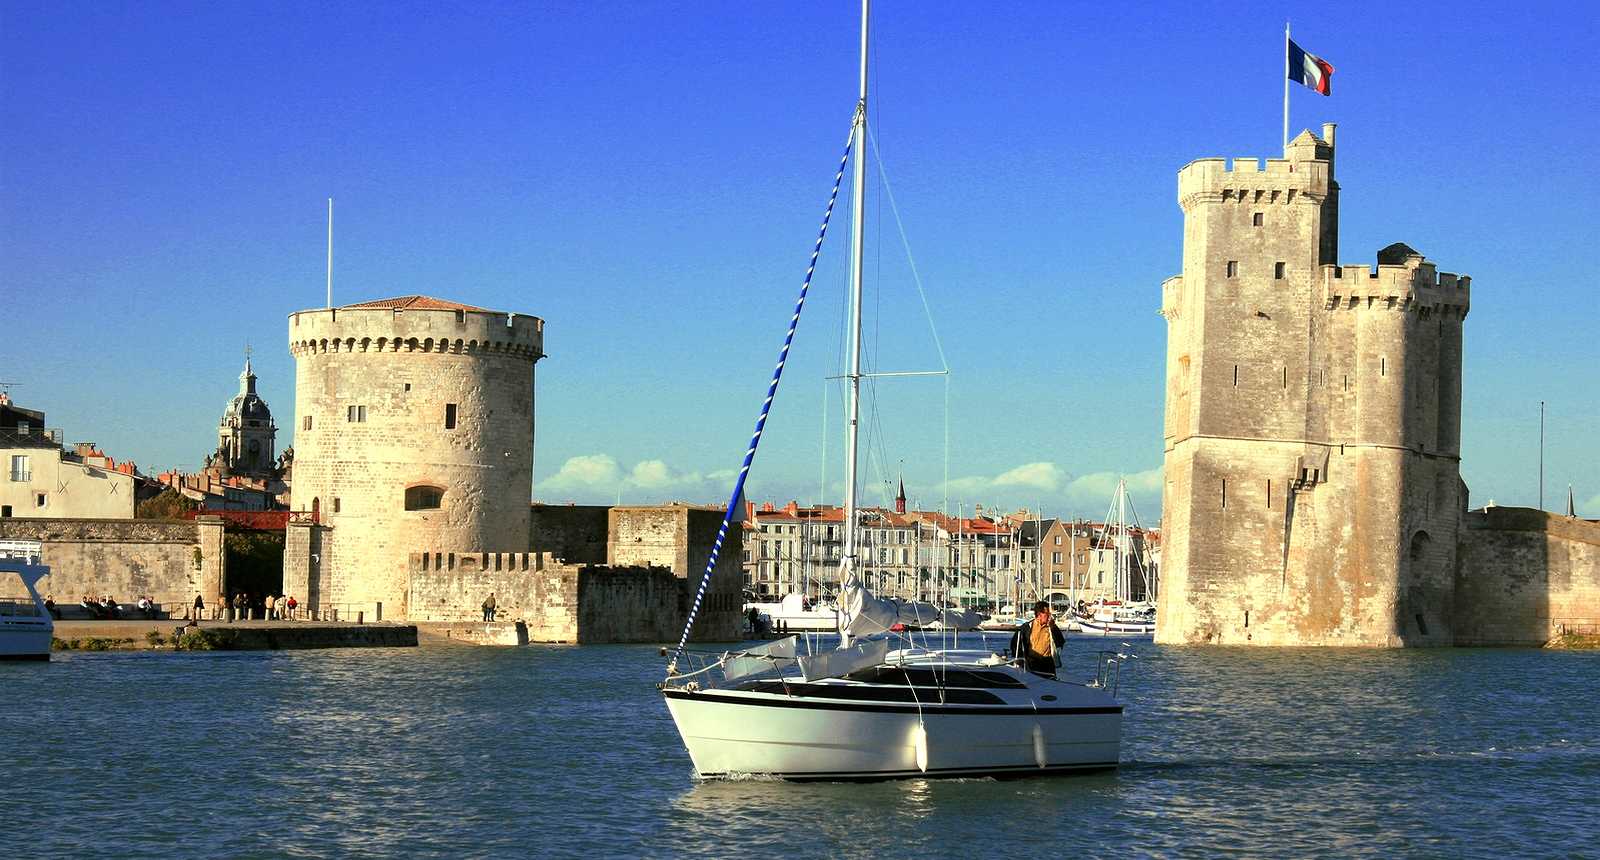 La liste des choses à faire ou à voir à La Rochelle